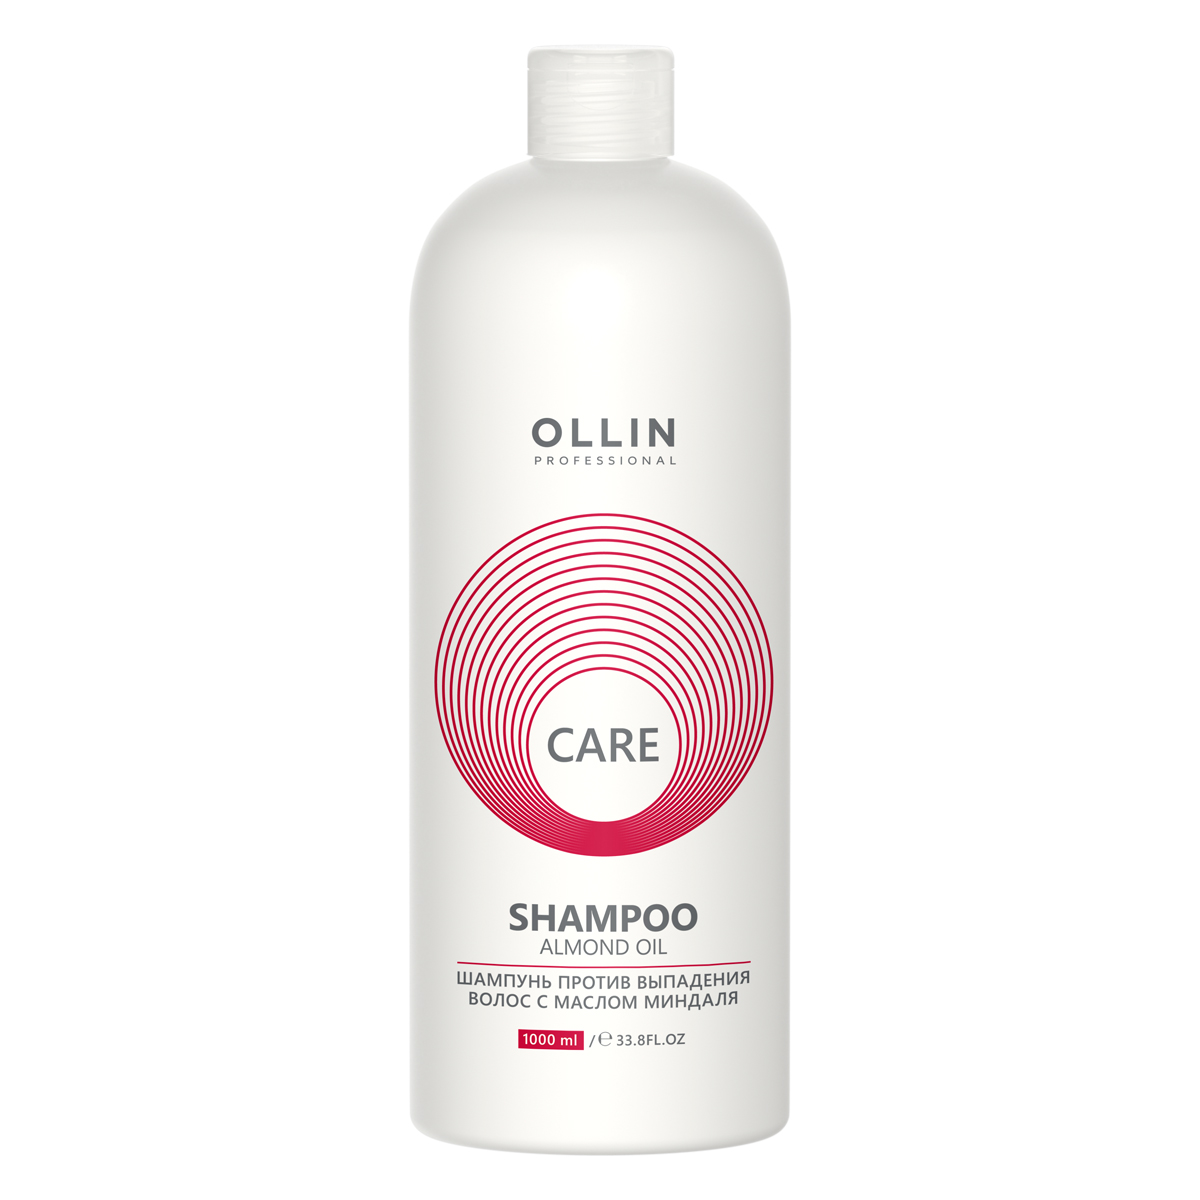 Ollin Professional Шампунь против выпадения волос с маслом миндаля, 1000 мл (Ollin Professional, Care)